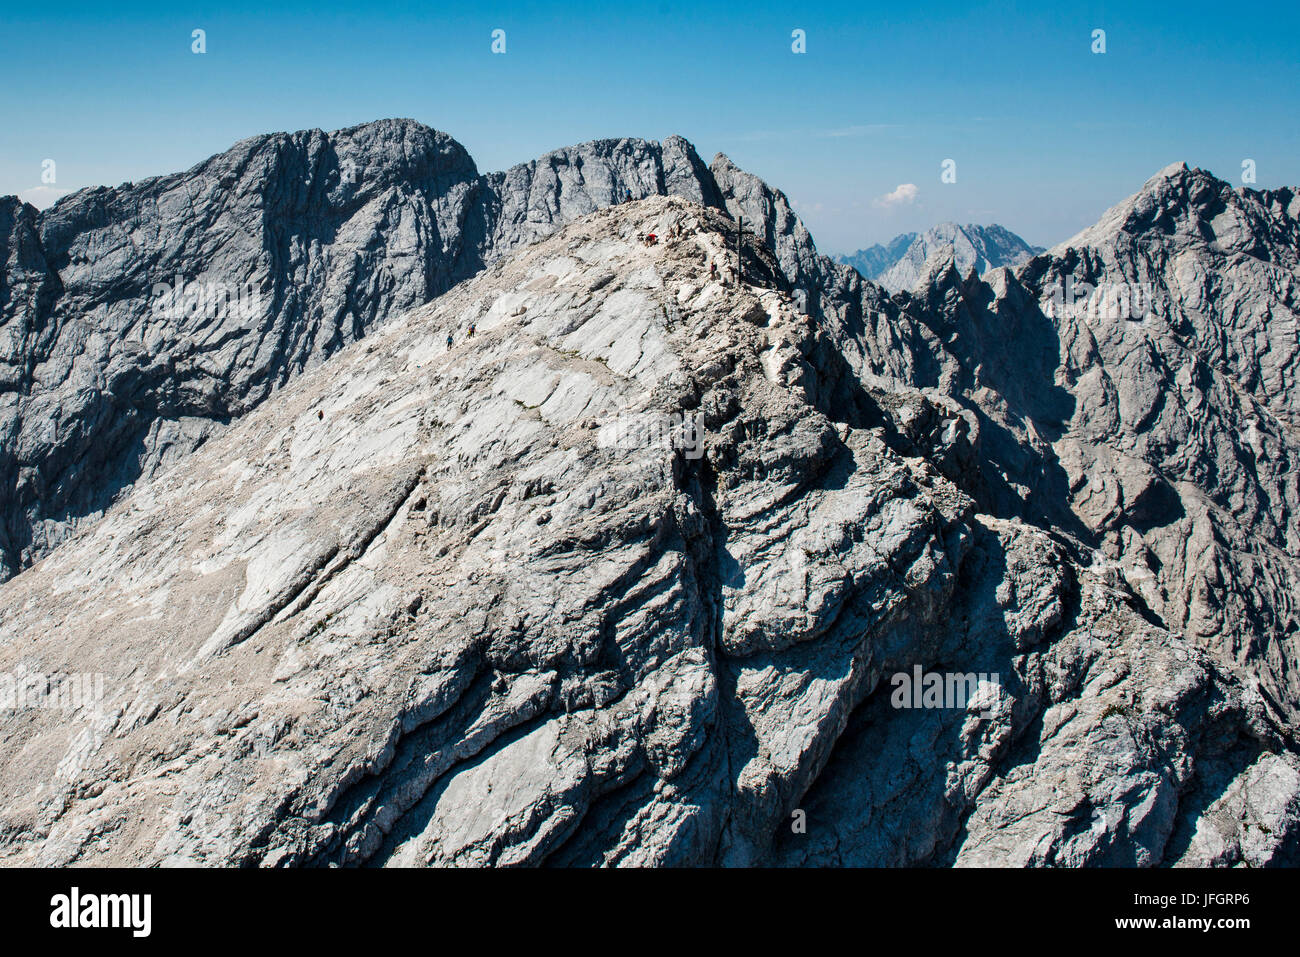 Alpspitze, Garmisch-Partenkirchen, mountaintop, Ferrata, aerial picture, Wetterstein Range, Jubiläumsgrat, Bavaria, Germany Stock Photo